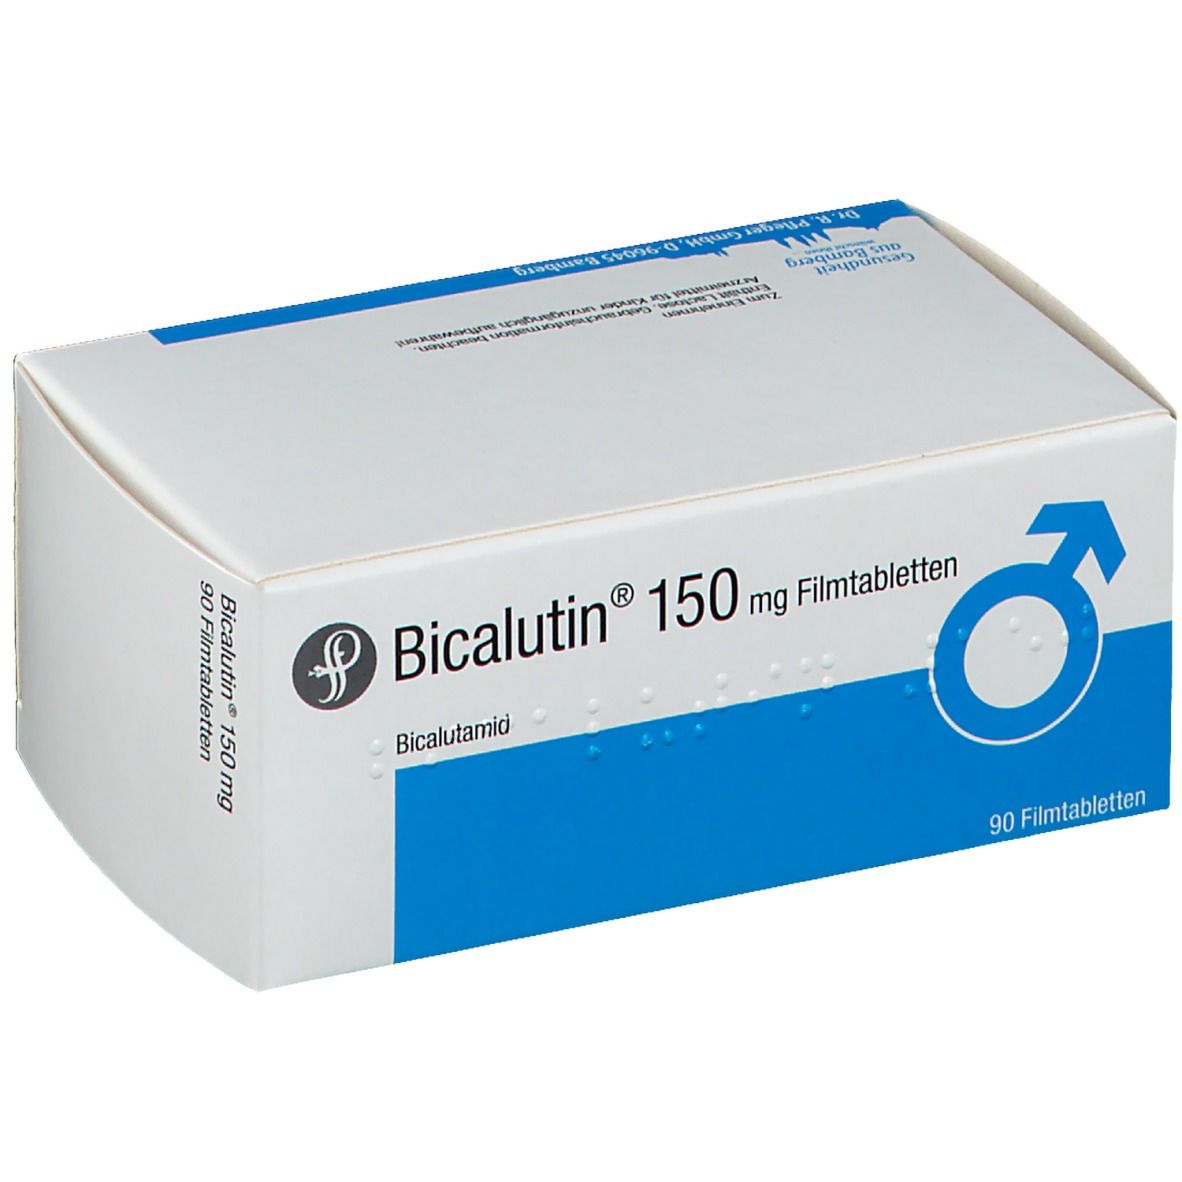 Bicalutin® 150 mg